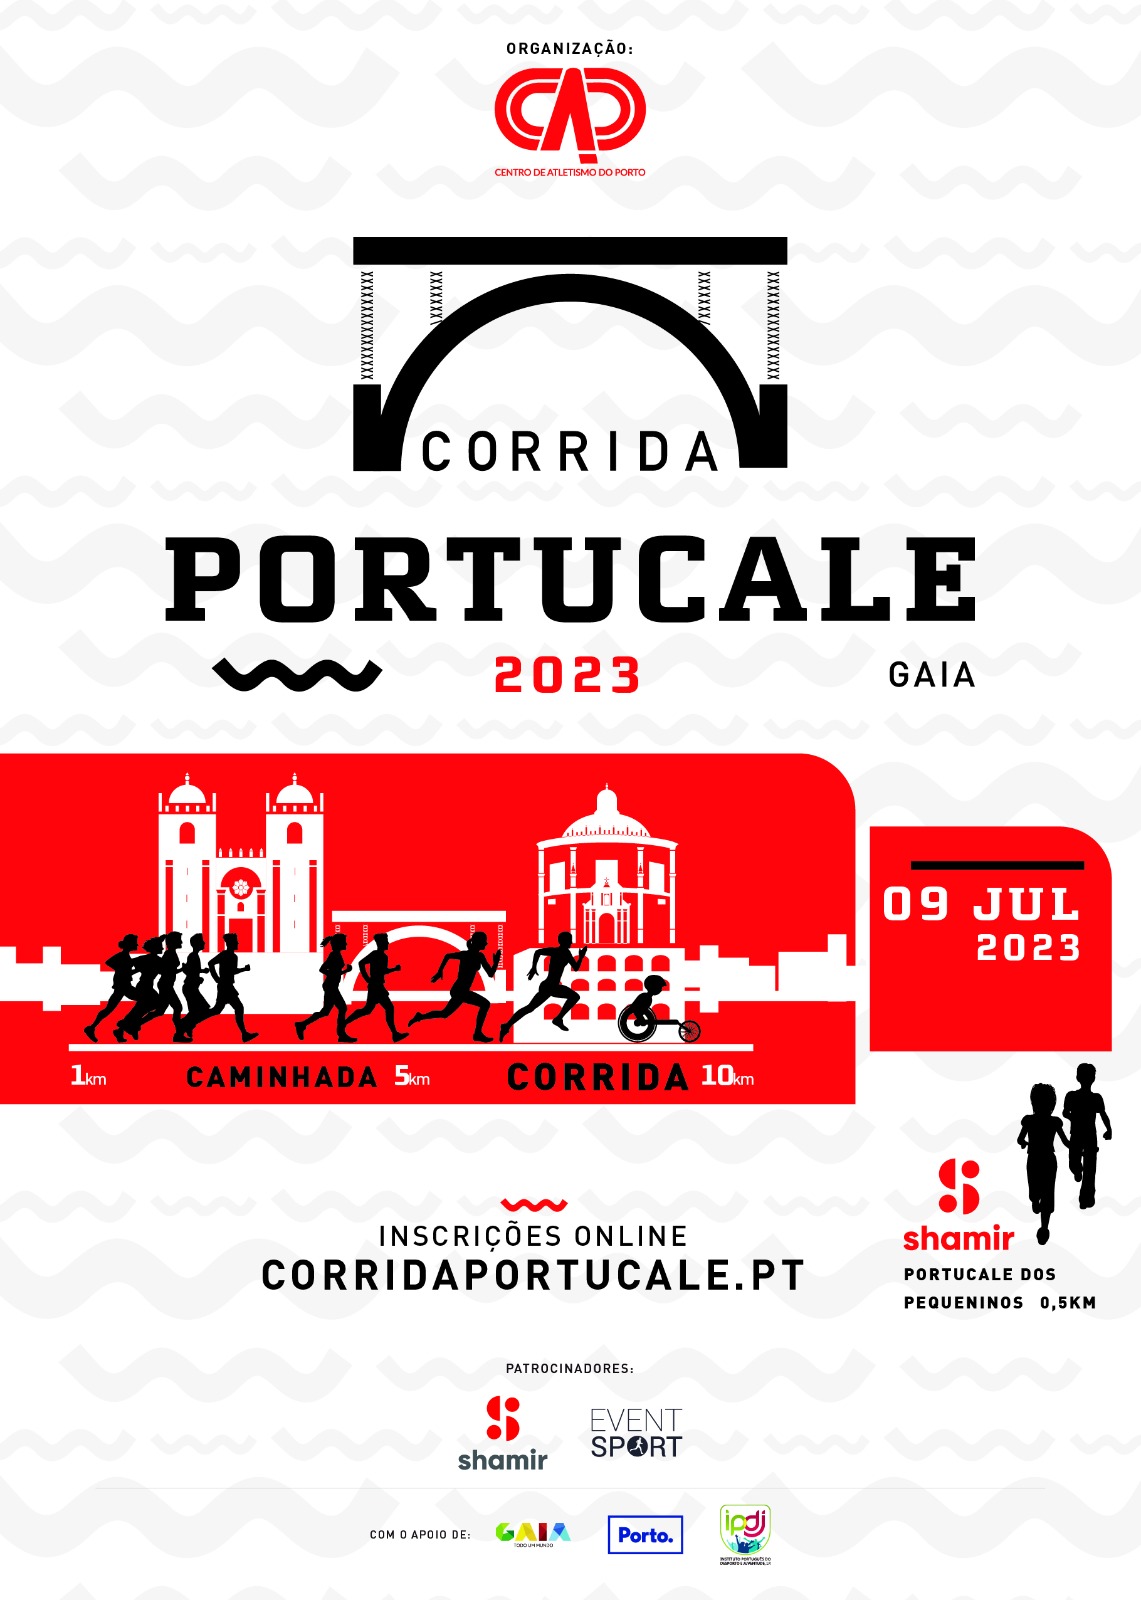 Shamir Corrida Portucale 2023 - Event